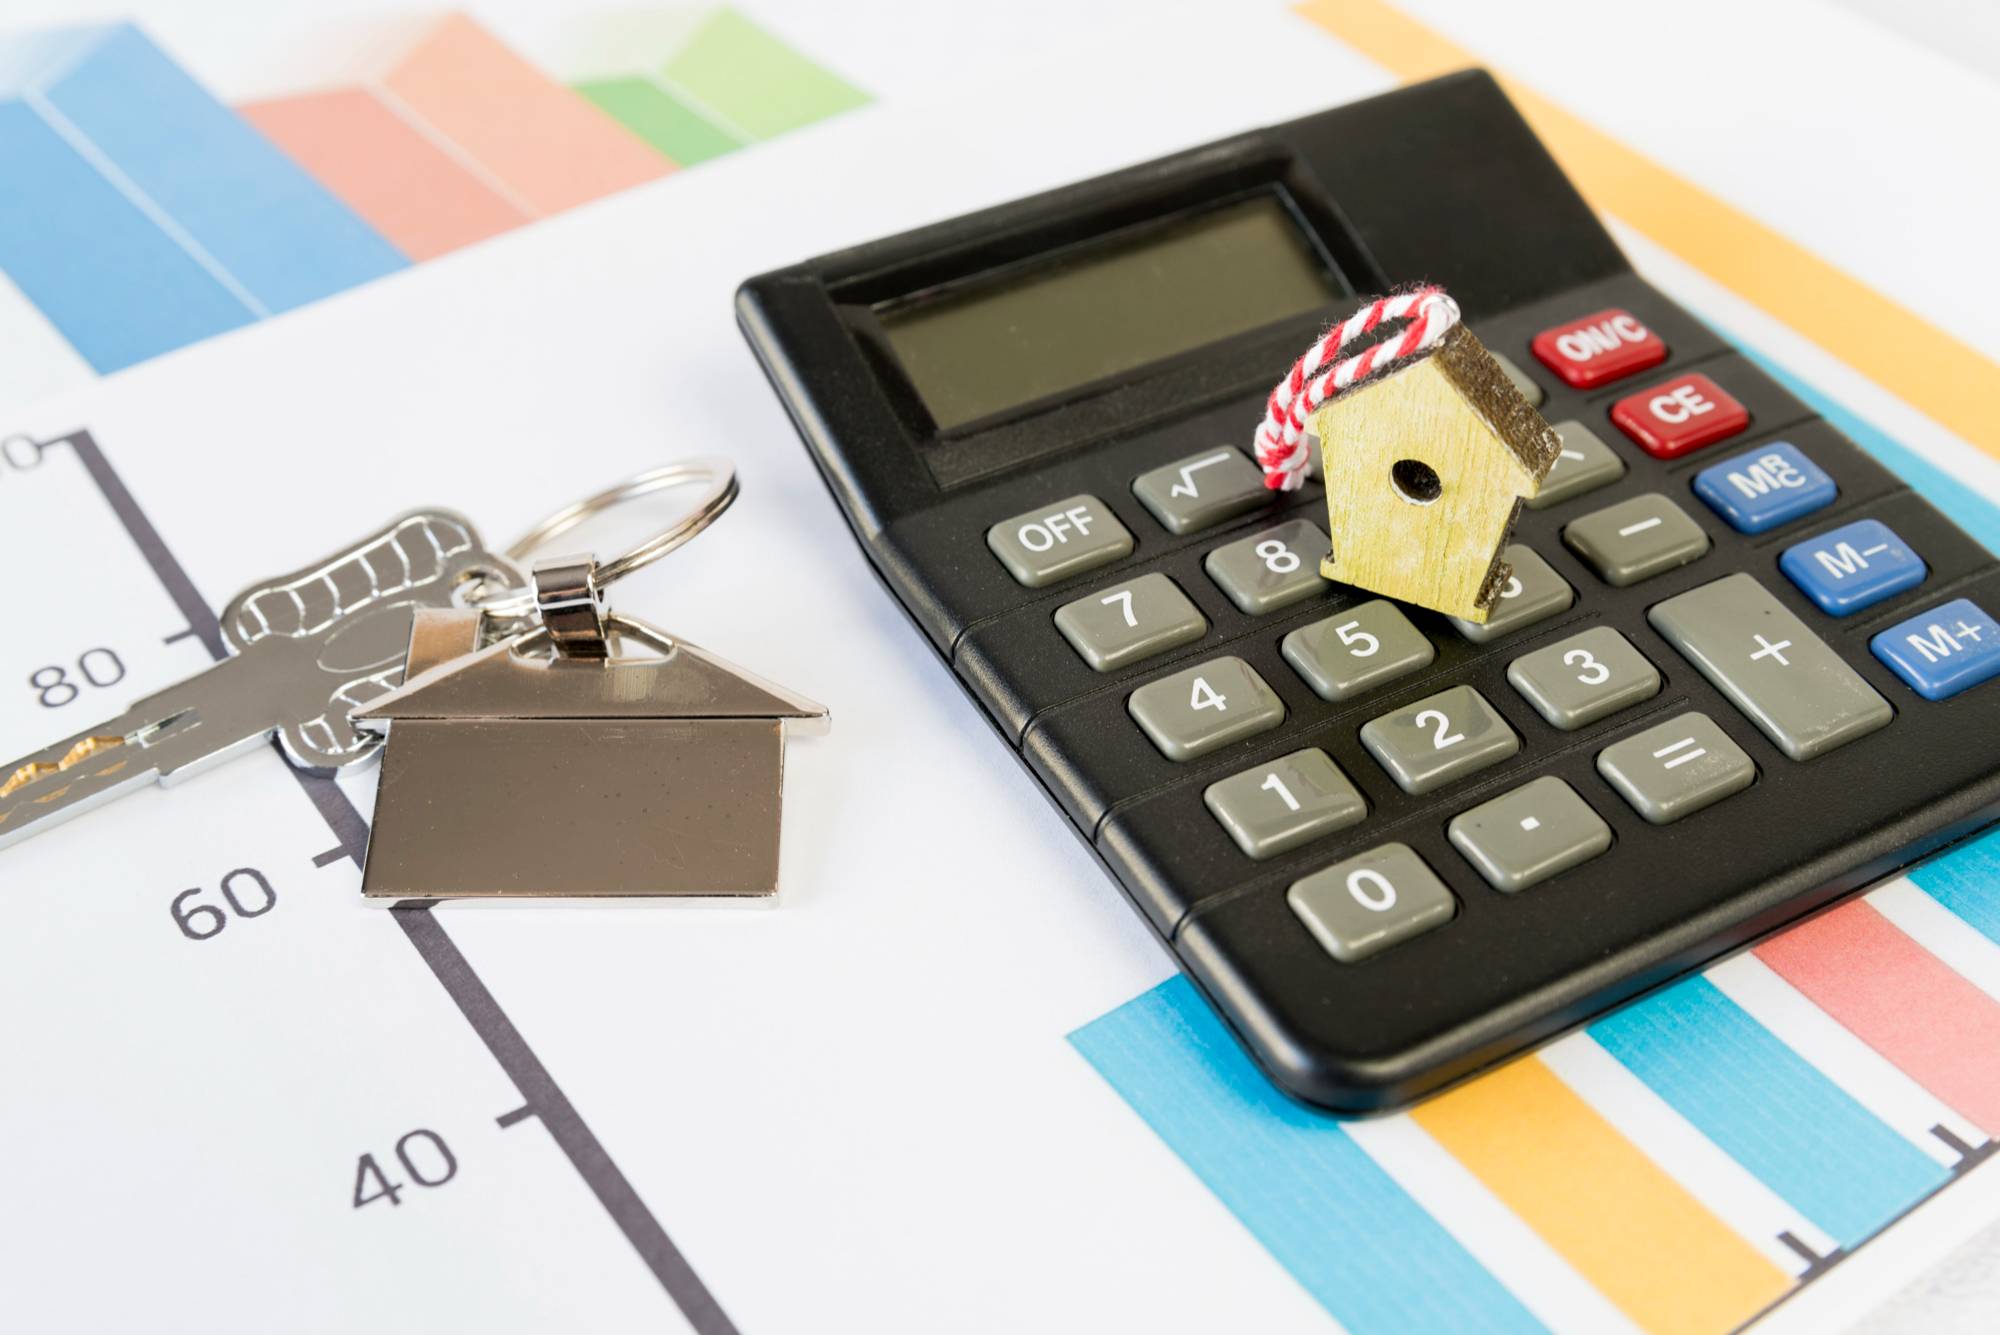 Взять кредит под залог недвижимости - какие плюсы и минусы?